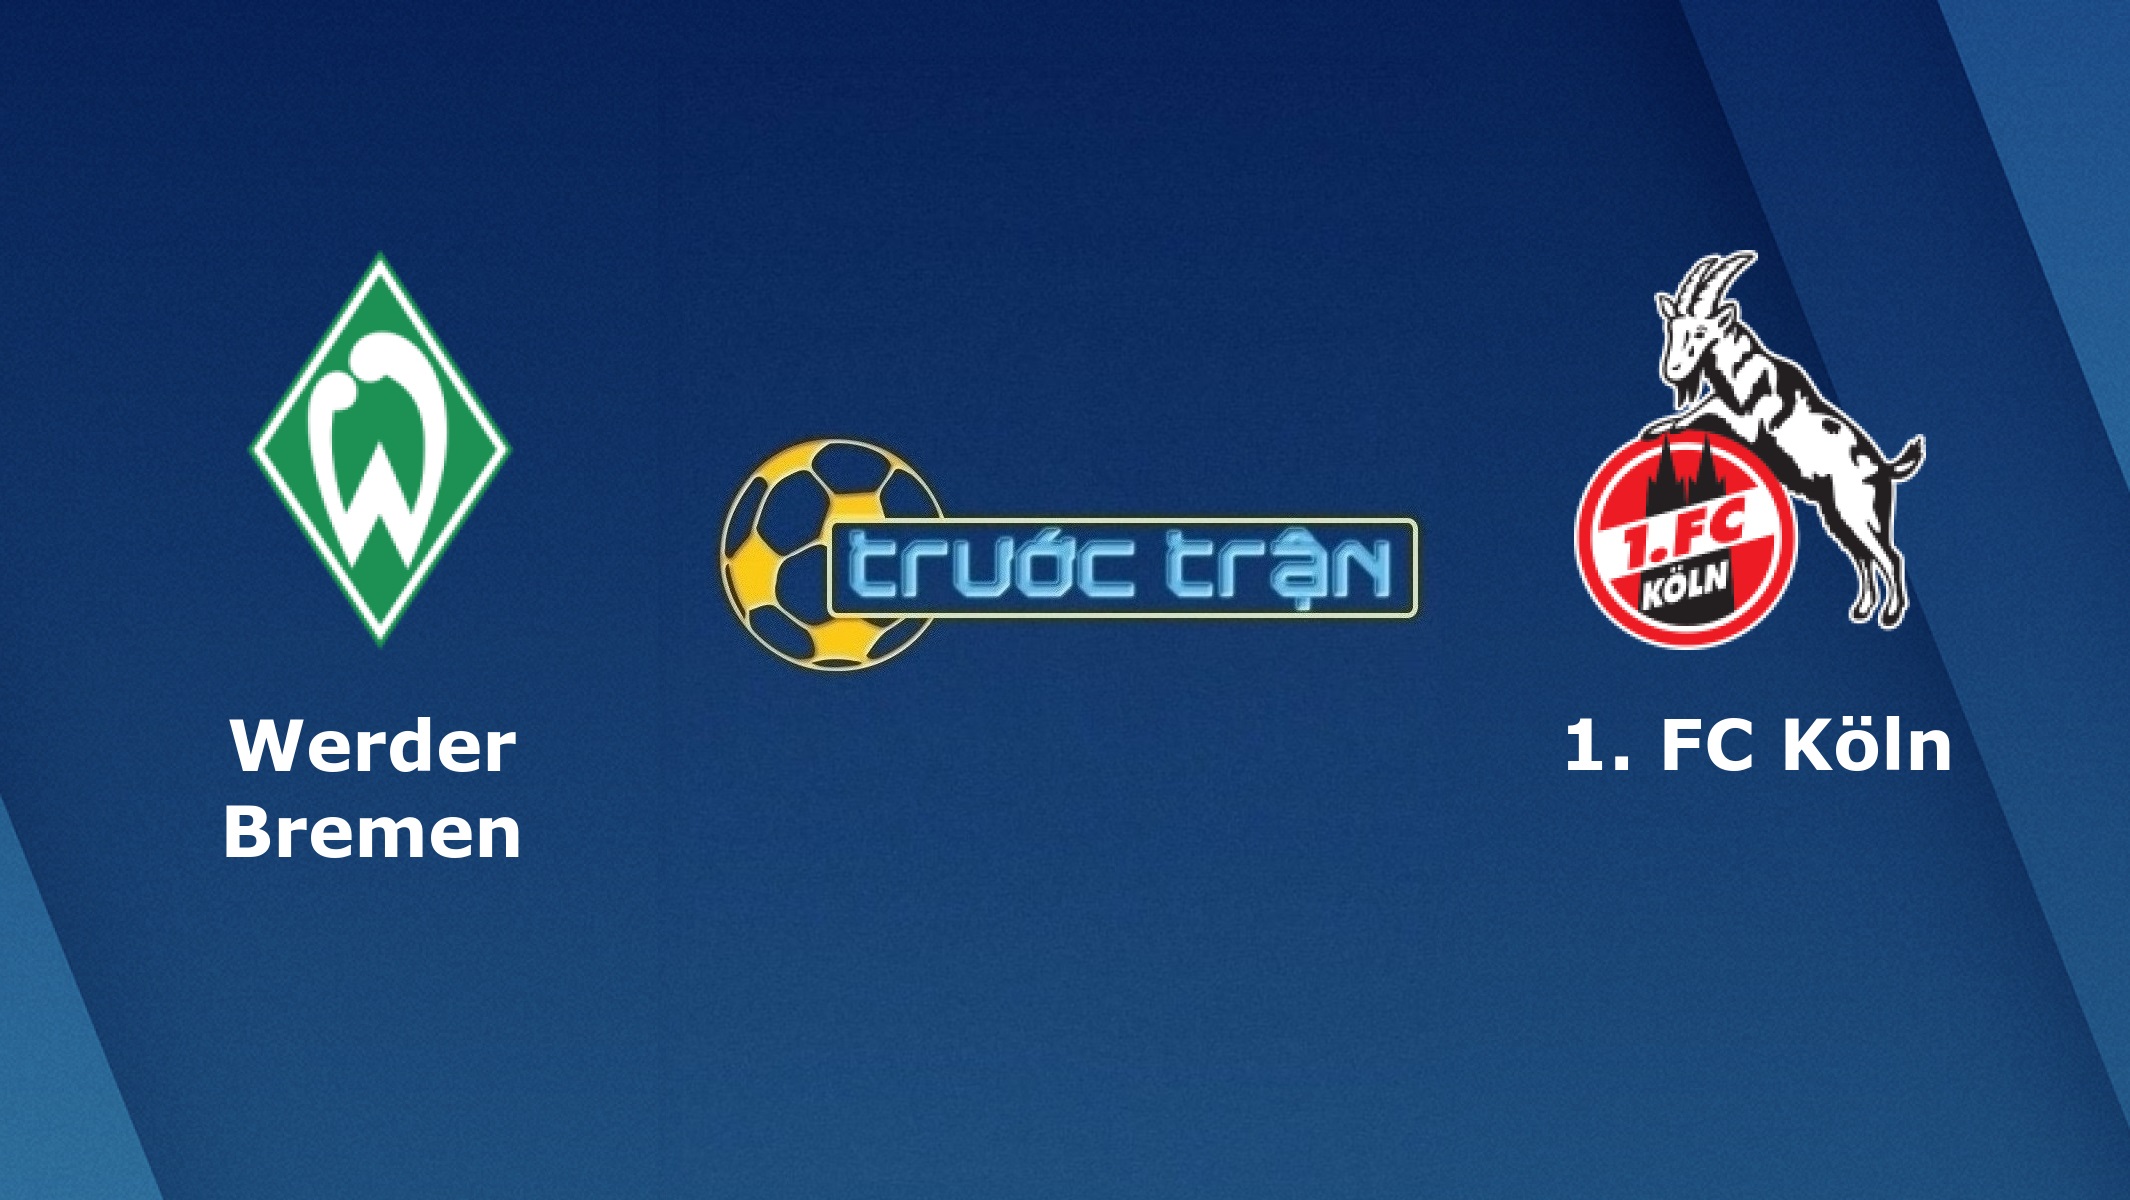 Werder Bremen vs FC Koln – Tip kèo bóng đá hôm nay – 02h30 07/11/2020